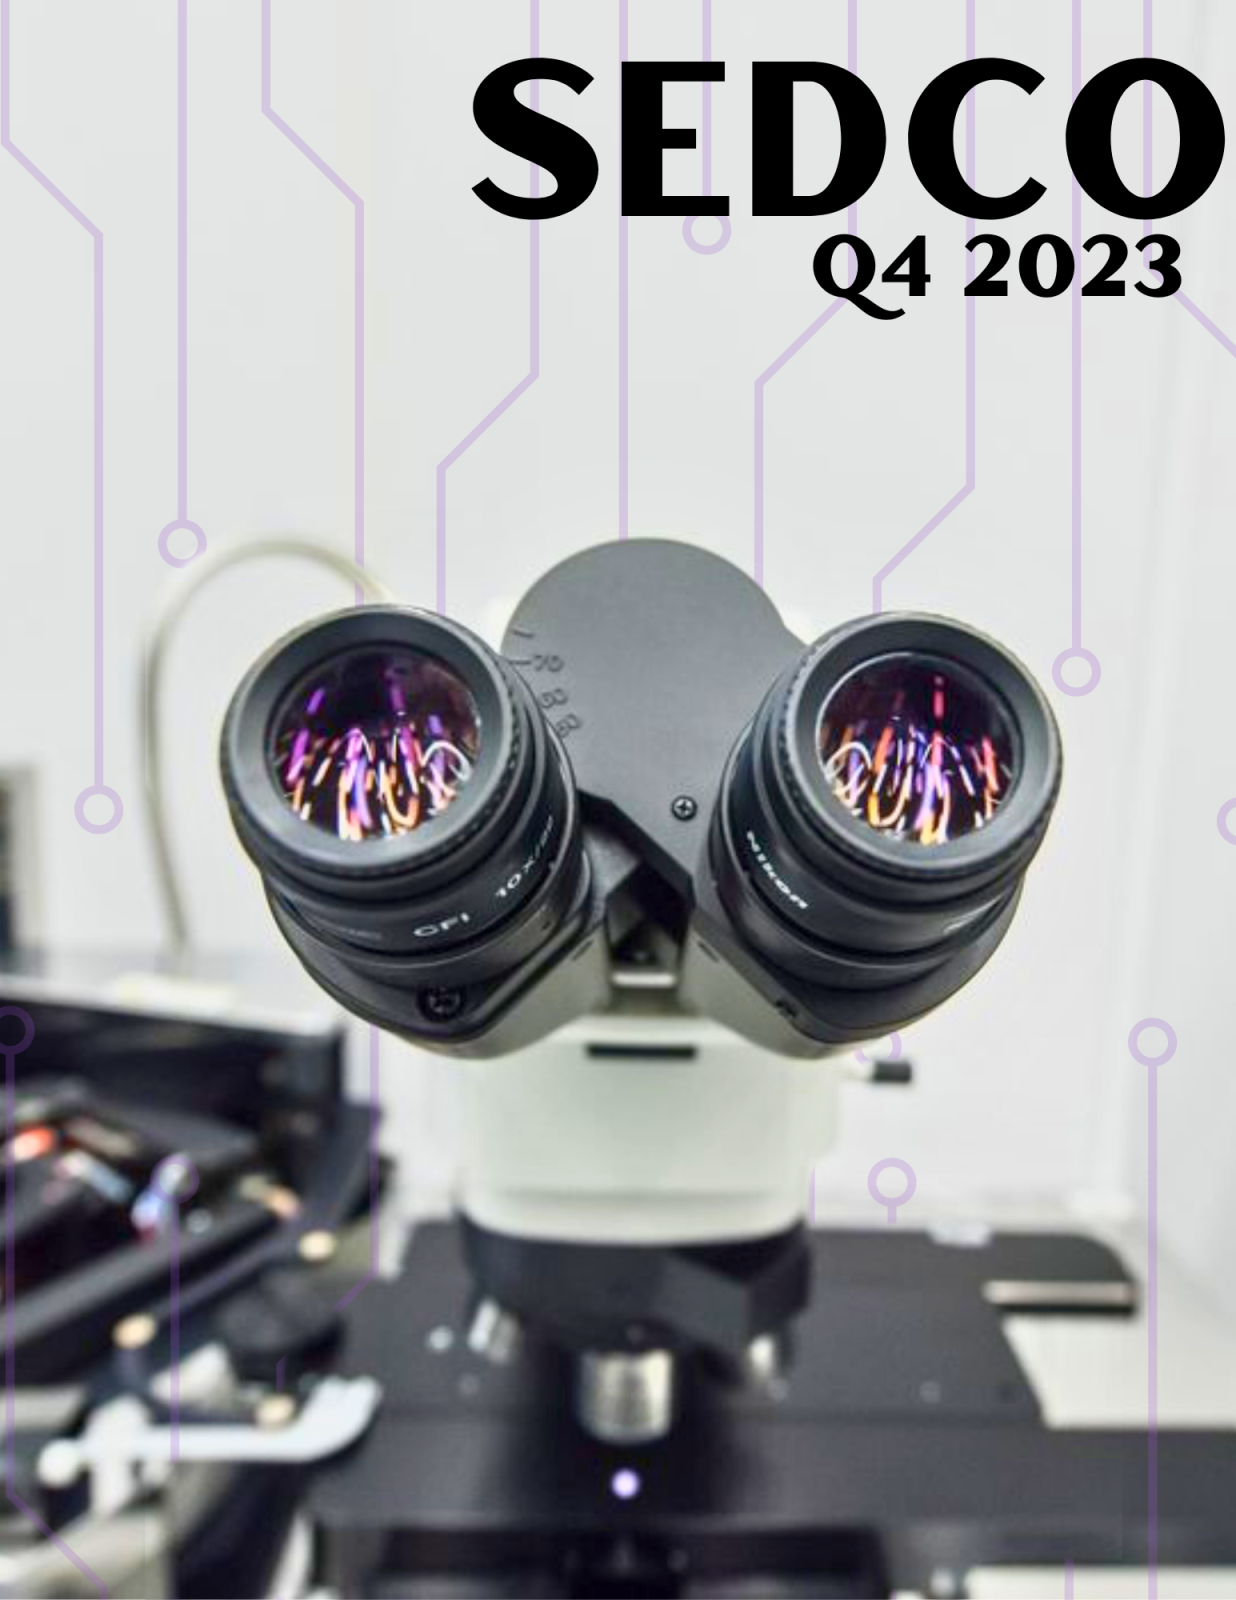 SEDCO Quarterly Report (2023 Q4)